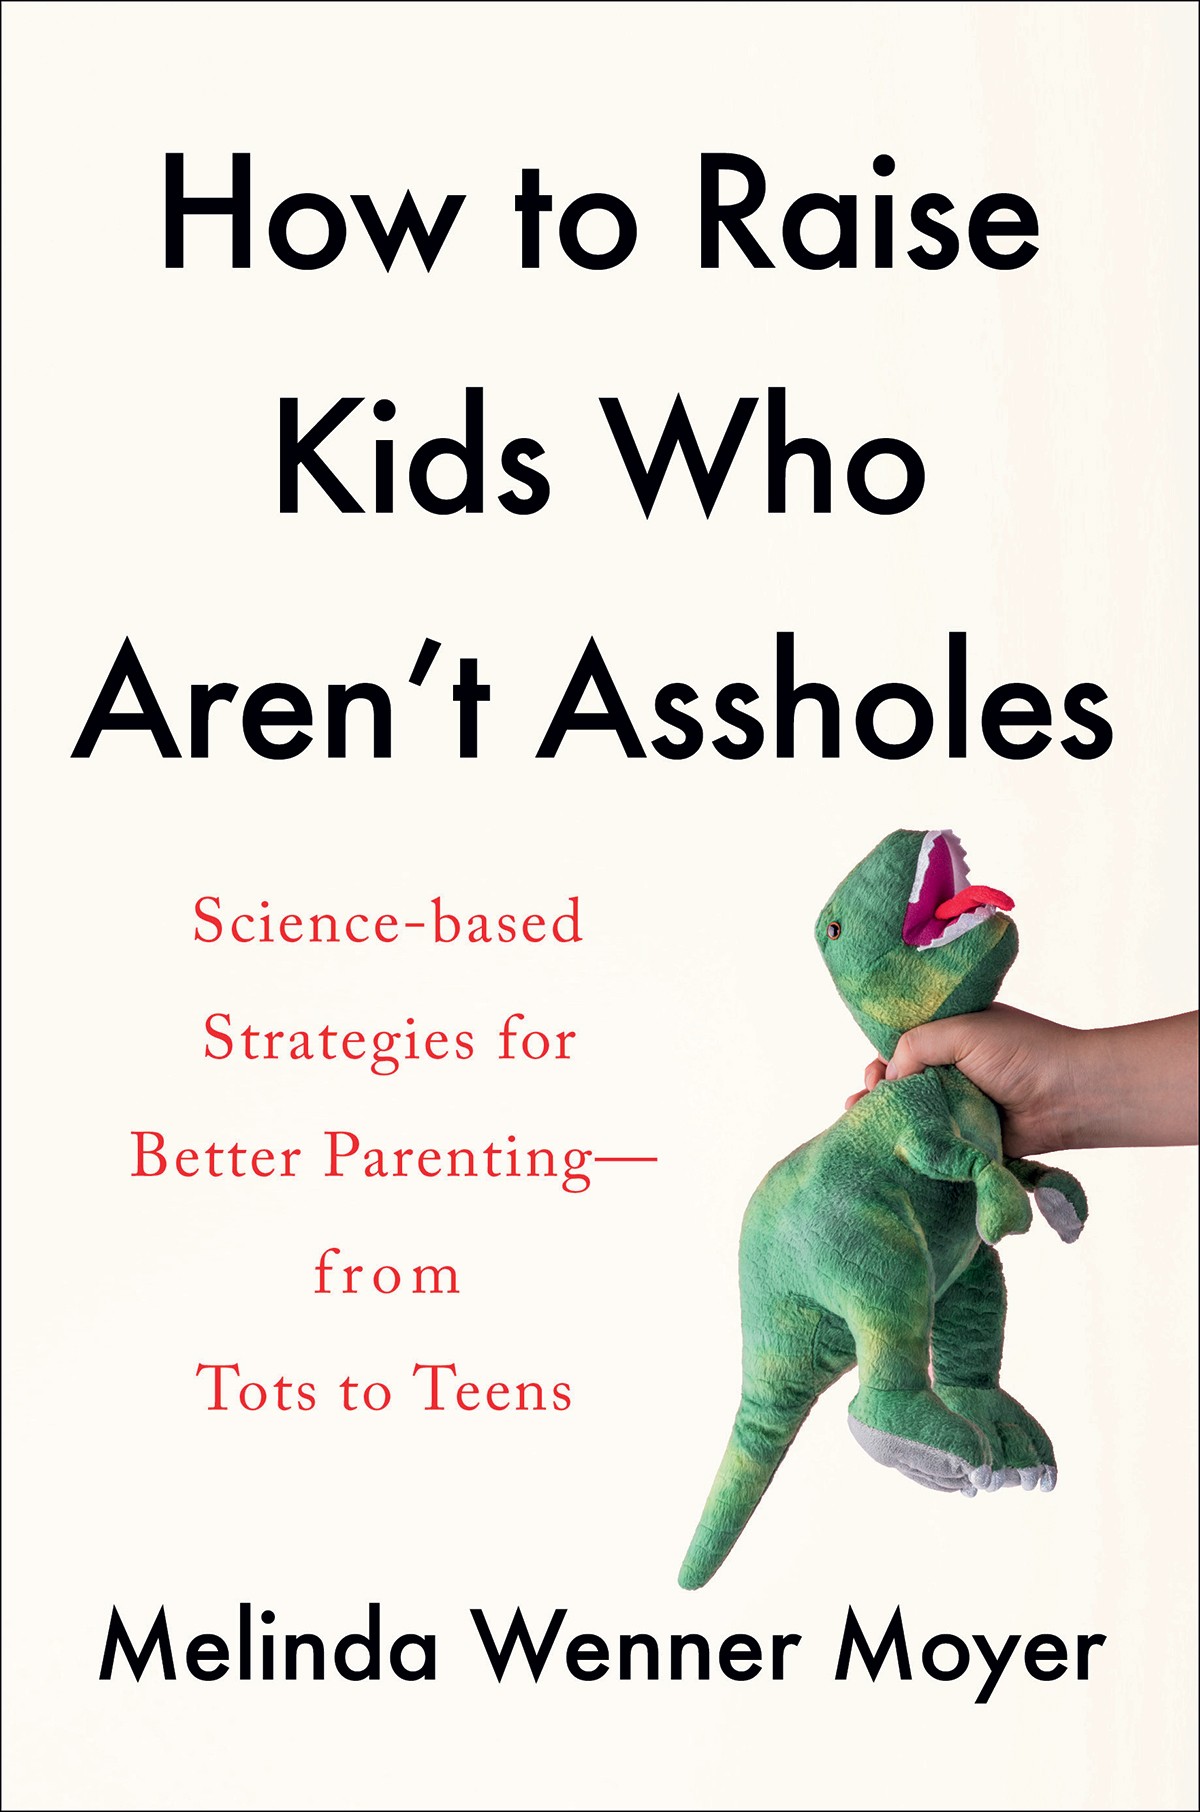 How To Raise Kids Who Aren’t Assholes, de Melinda Wenner Moyer, (Editora Headline Home), R$ 41,83* (*Preço consultado na Amazon.com) (Foto: Divulgação)